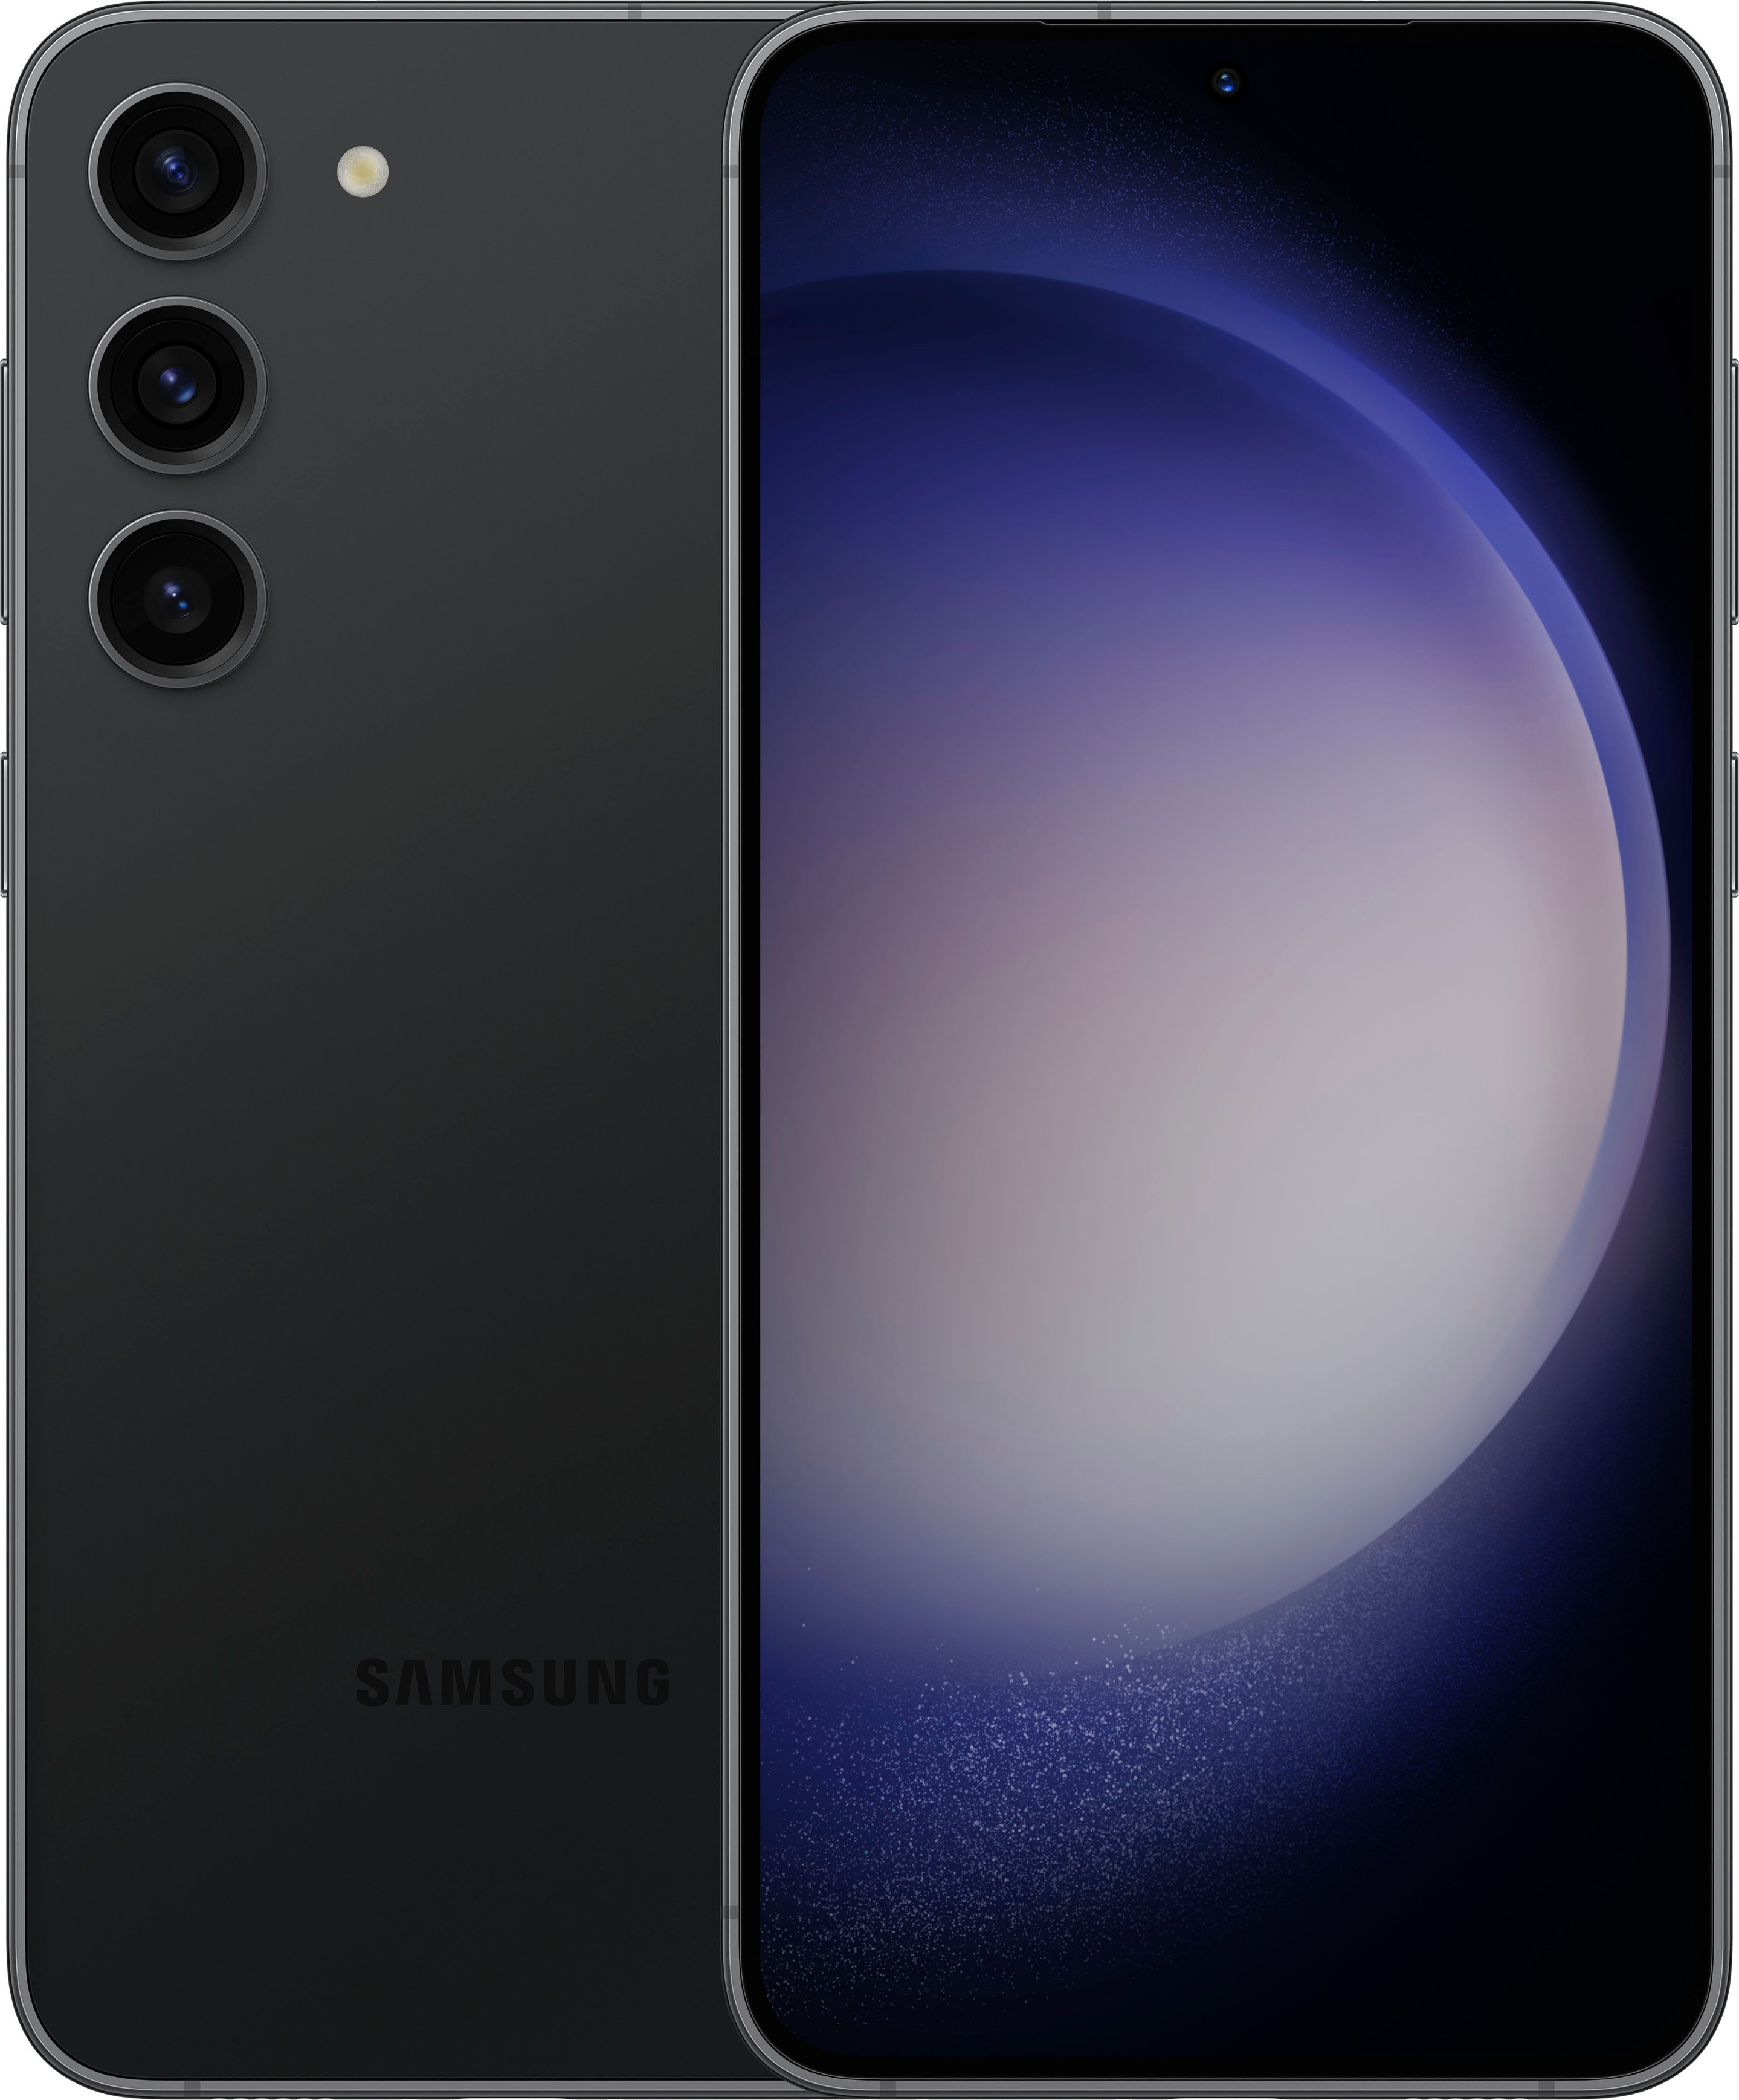 Chegou o Samsung S23 no Paraguai confira o preço na @cellshop.py #sams